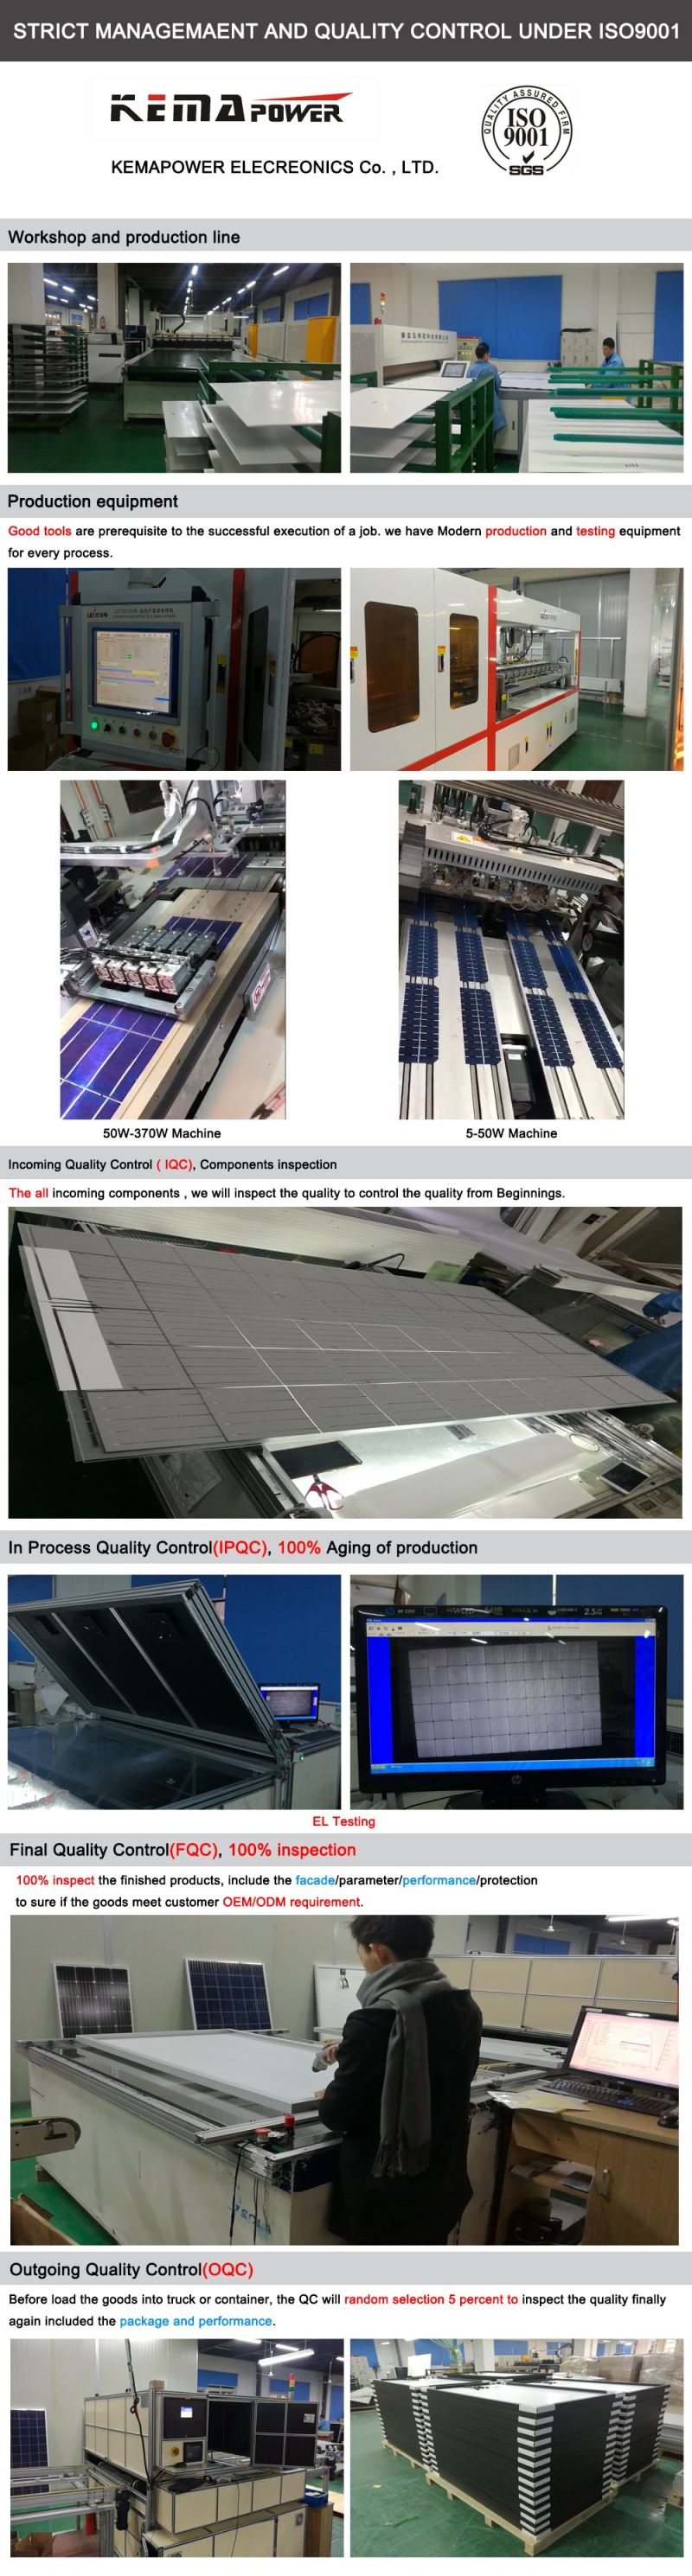 Gym12V 100W Mono Solar PV Panel for Home Solar Power System